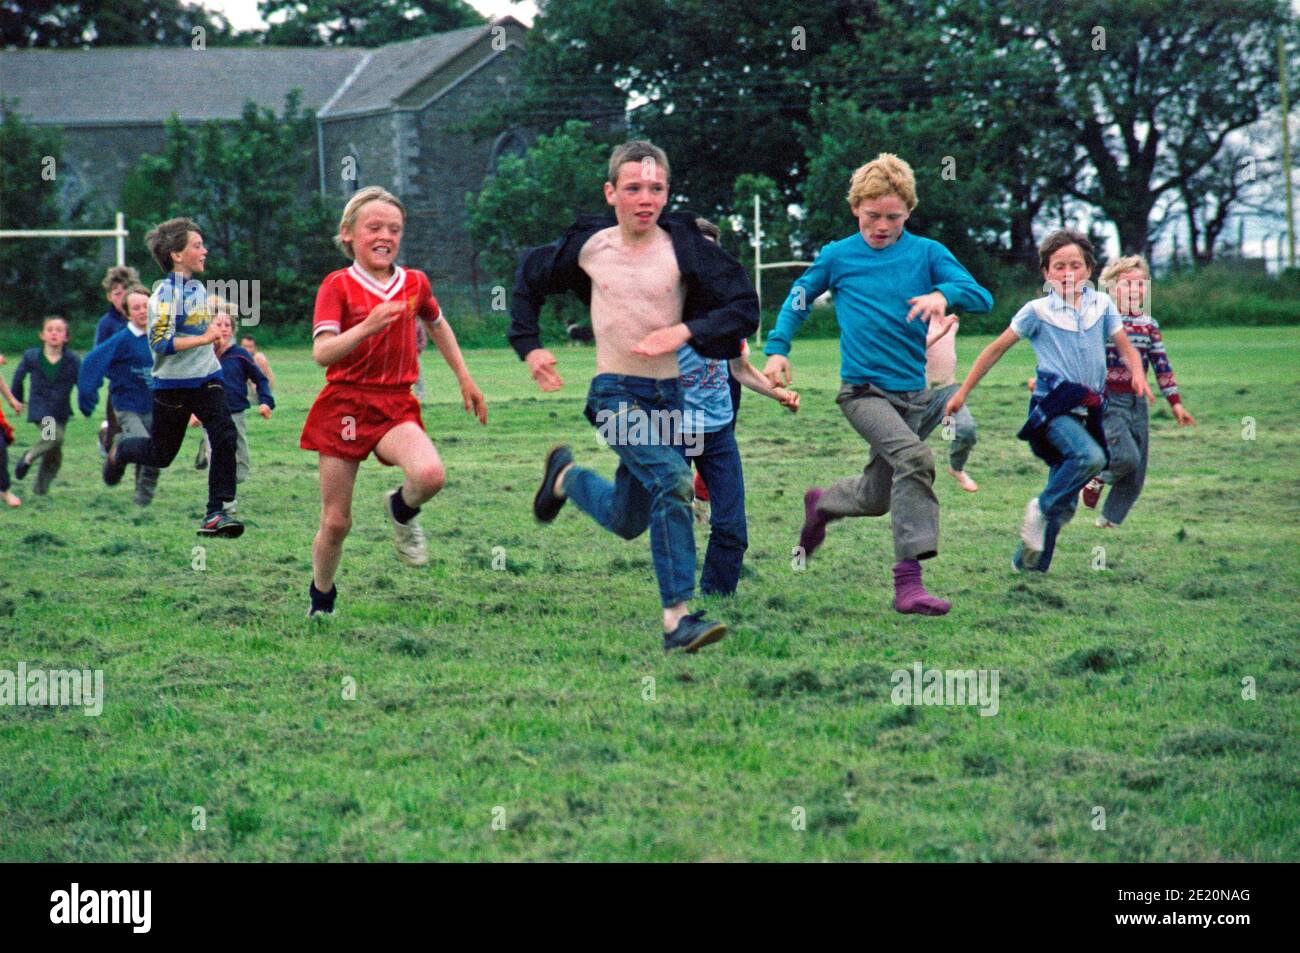 Kinder spielen auf dem Gelände von Sunshine House, historische Aufnahme, 18. Juli 1986, Balbriggan, County Dublin, Republik Irland | bambini che giocano sui terreni della Sunshine House, 18 luglio 1986, Balbriggan, County Dublin, Repubblica d'Irlanda Foto Stock